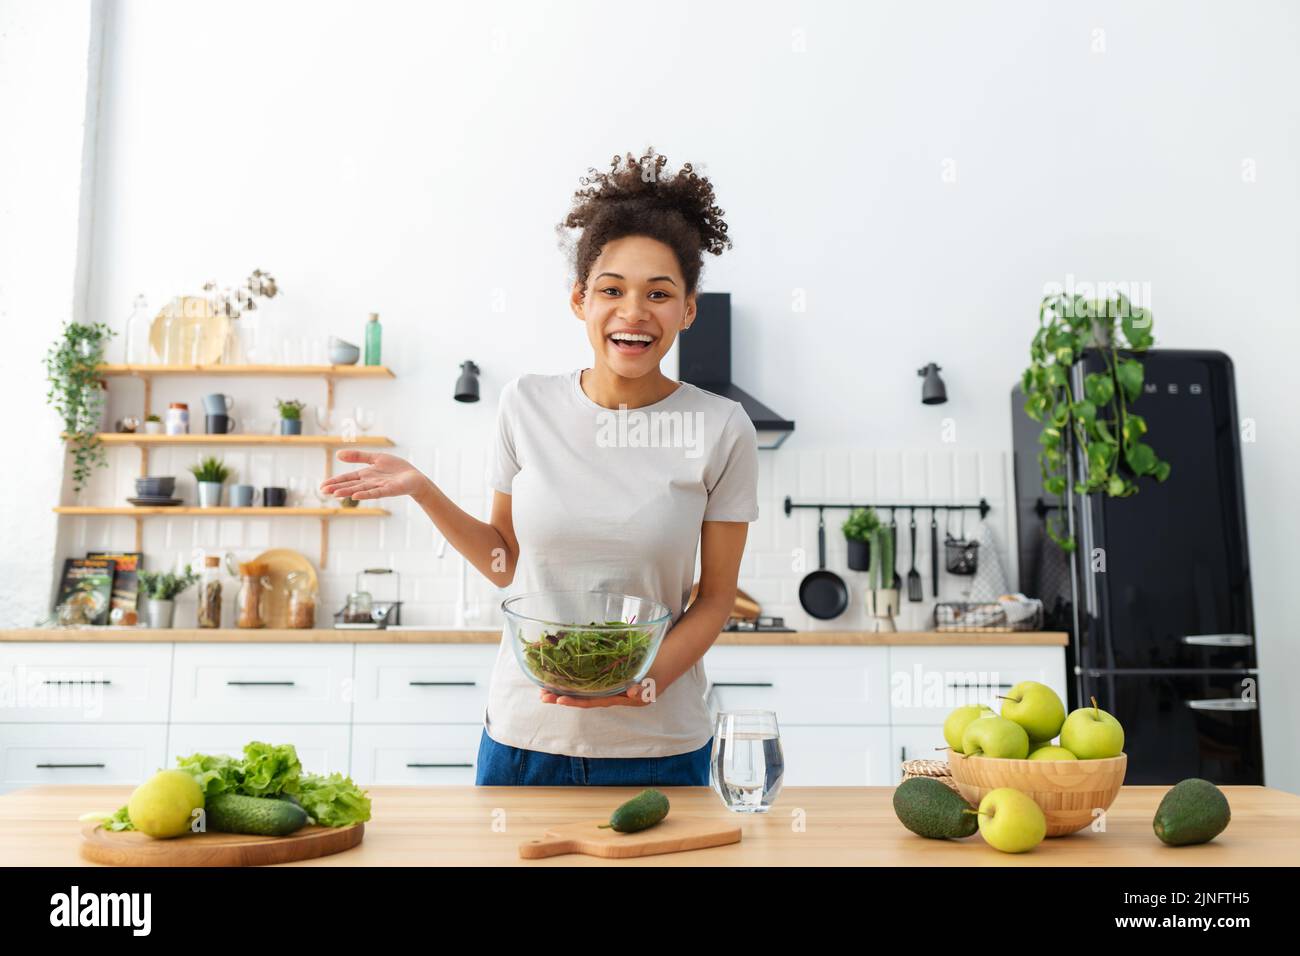 Junge Frau mit Webcam, um Video von Kochen gesunde Lebensmittel gesunde Lebensweise Konzept Online-Webinar aufzeichnen Stockfoto